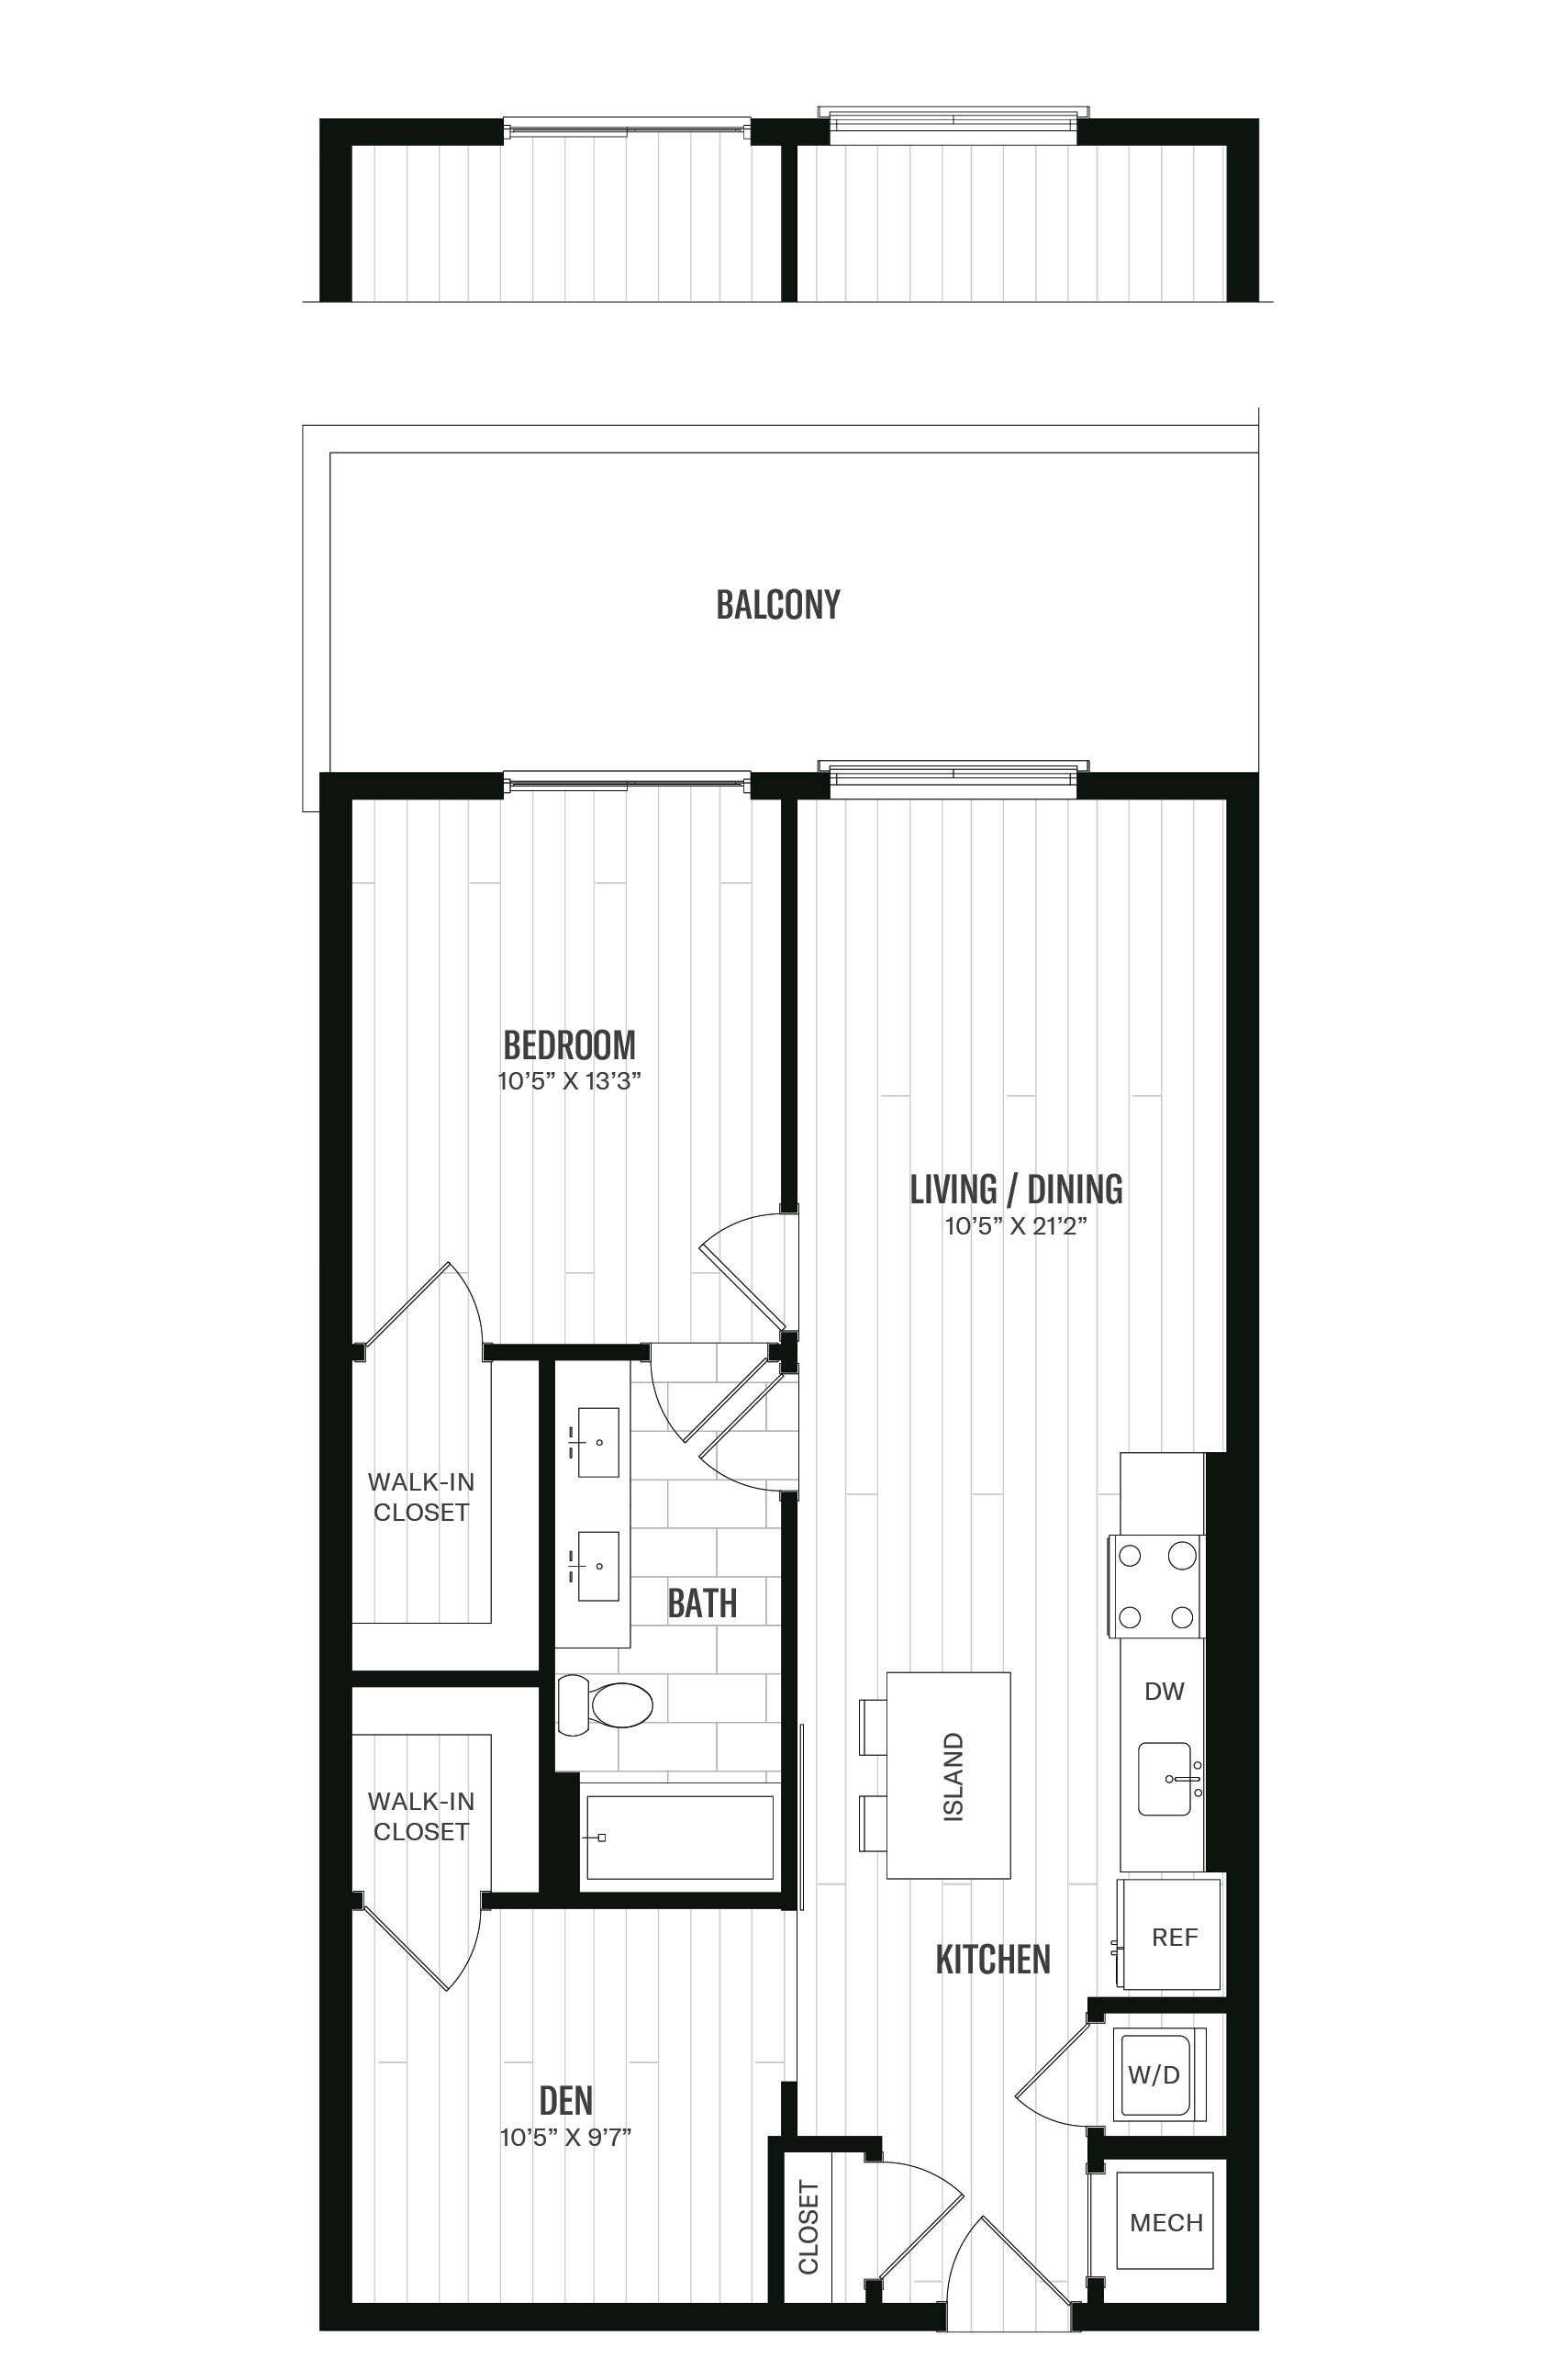 Floorplan image of unit 421